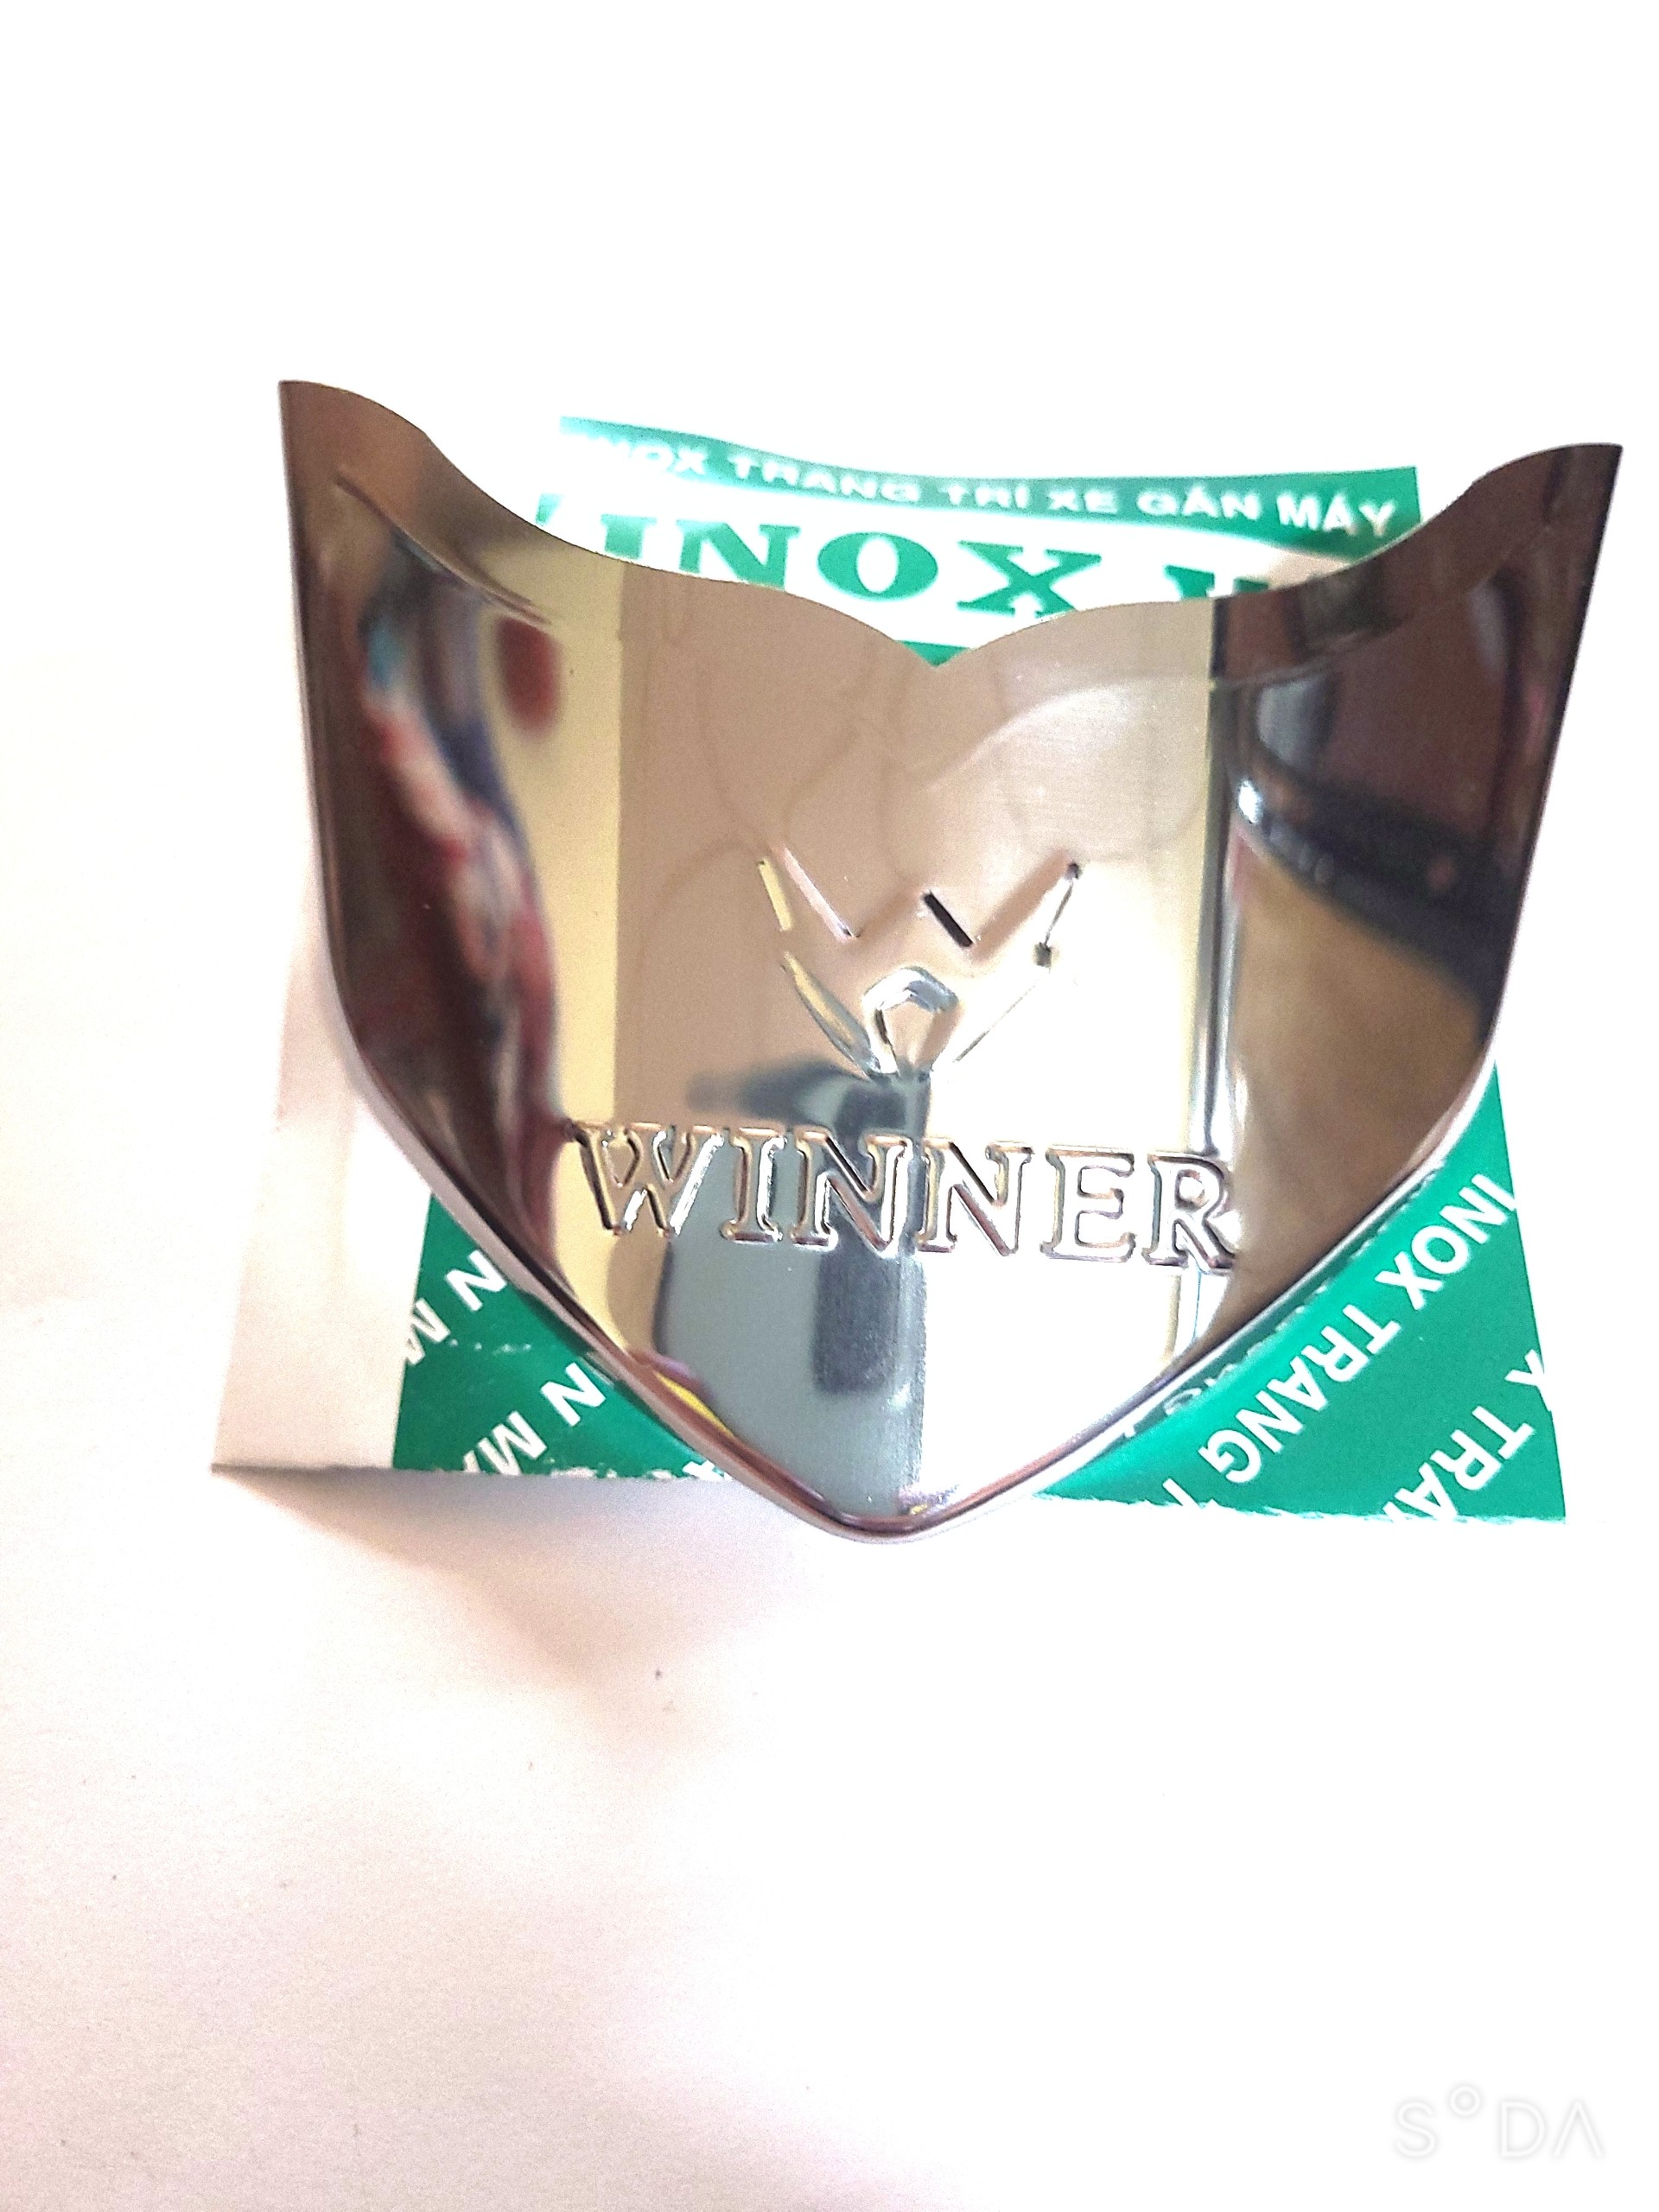 Combo Bộ ốp dè INOX dùng cho xe WINNER V1 + 1 tem logo Titan Honda giá 1 cặp tại xưởng INOX Vũ